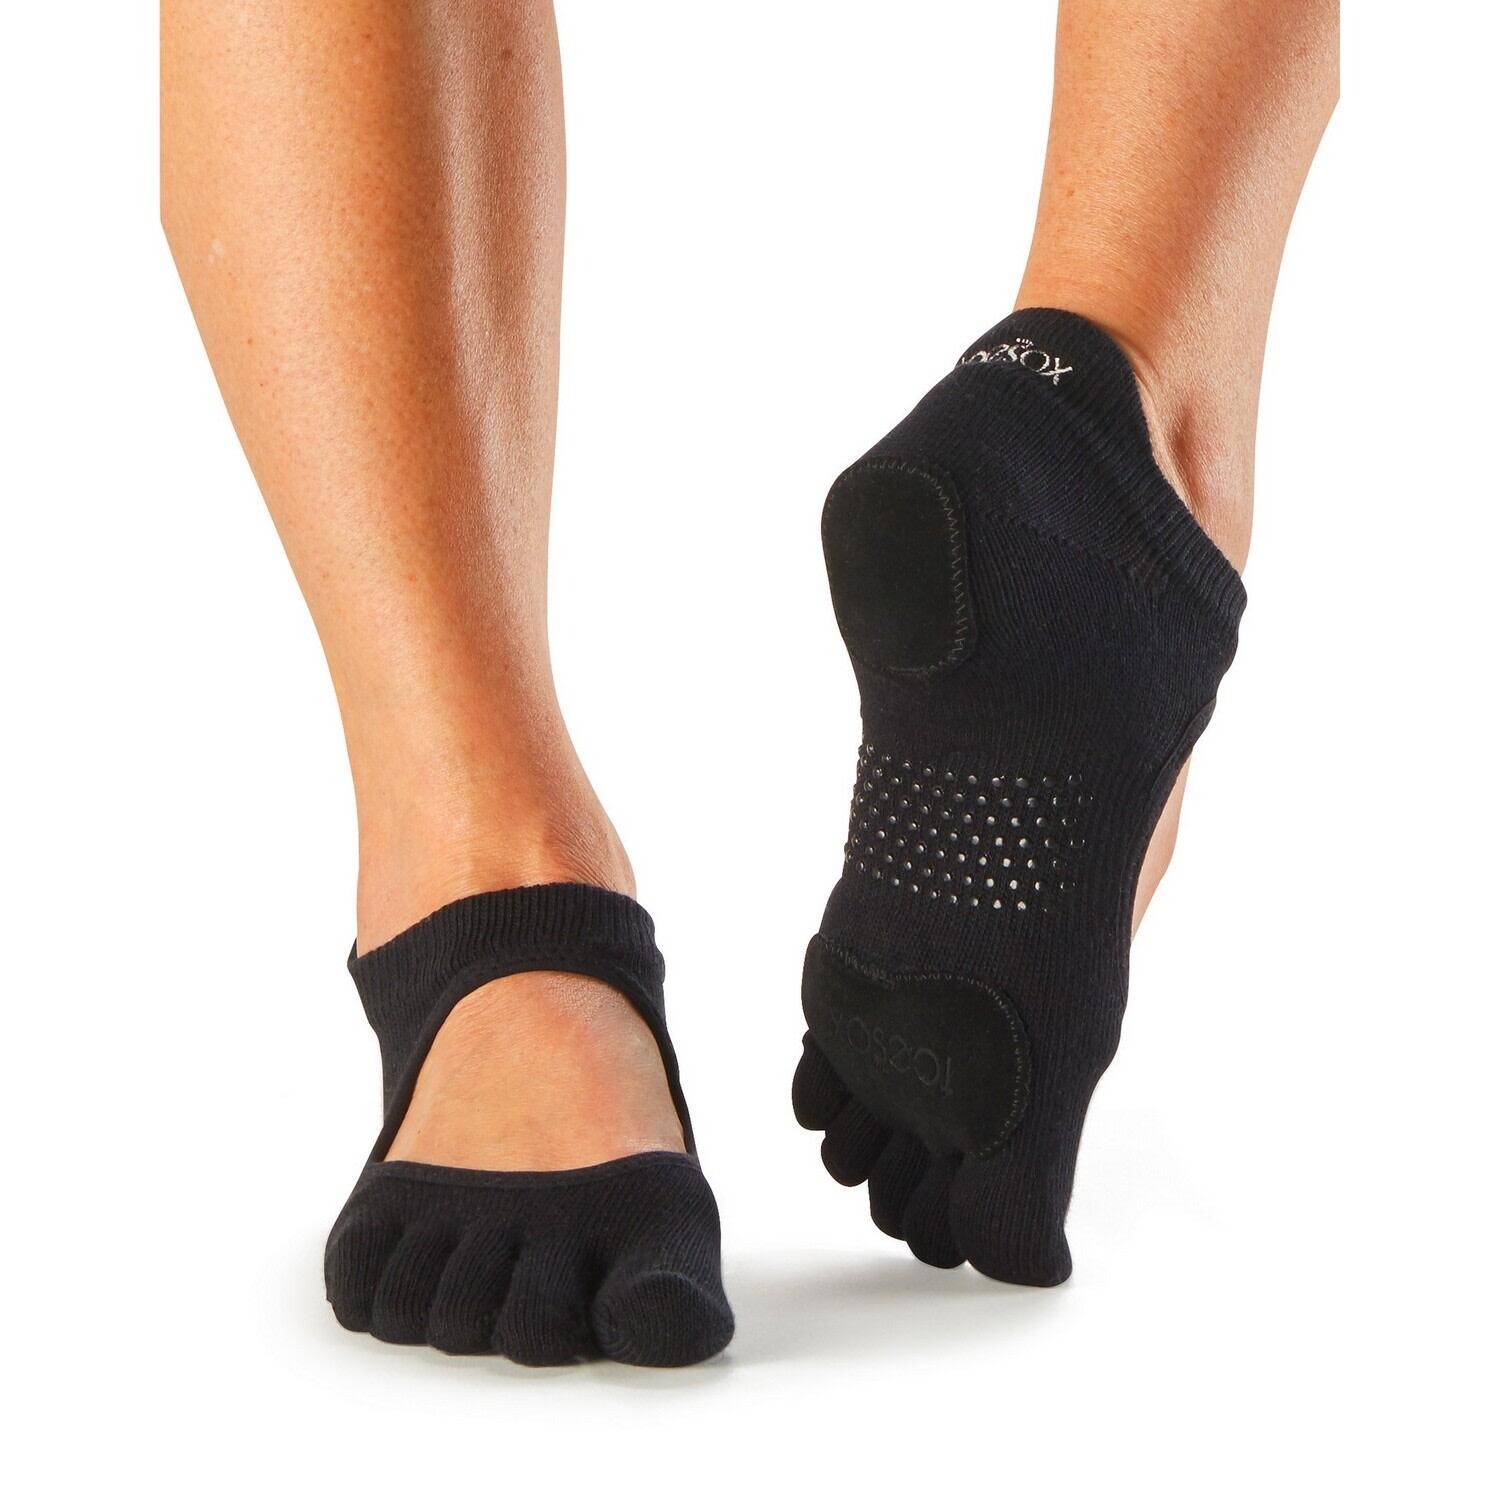 FITNESS-MAD Womens/Ladies Prima Bellarina Leather Toe Socks (Black)